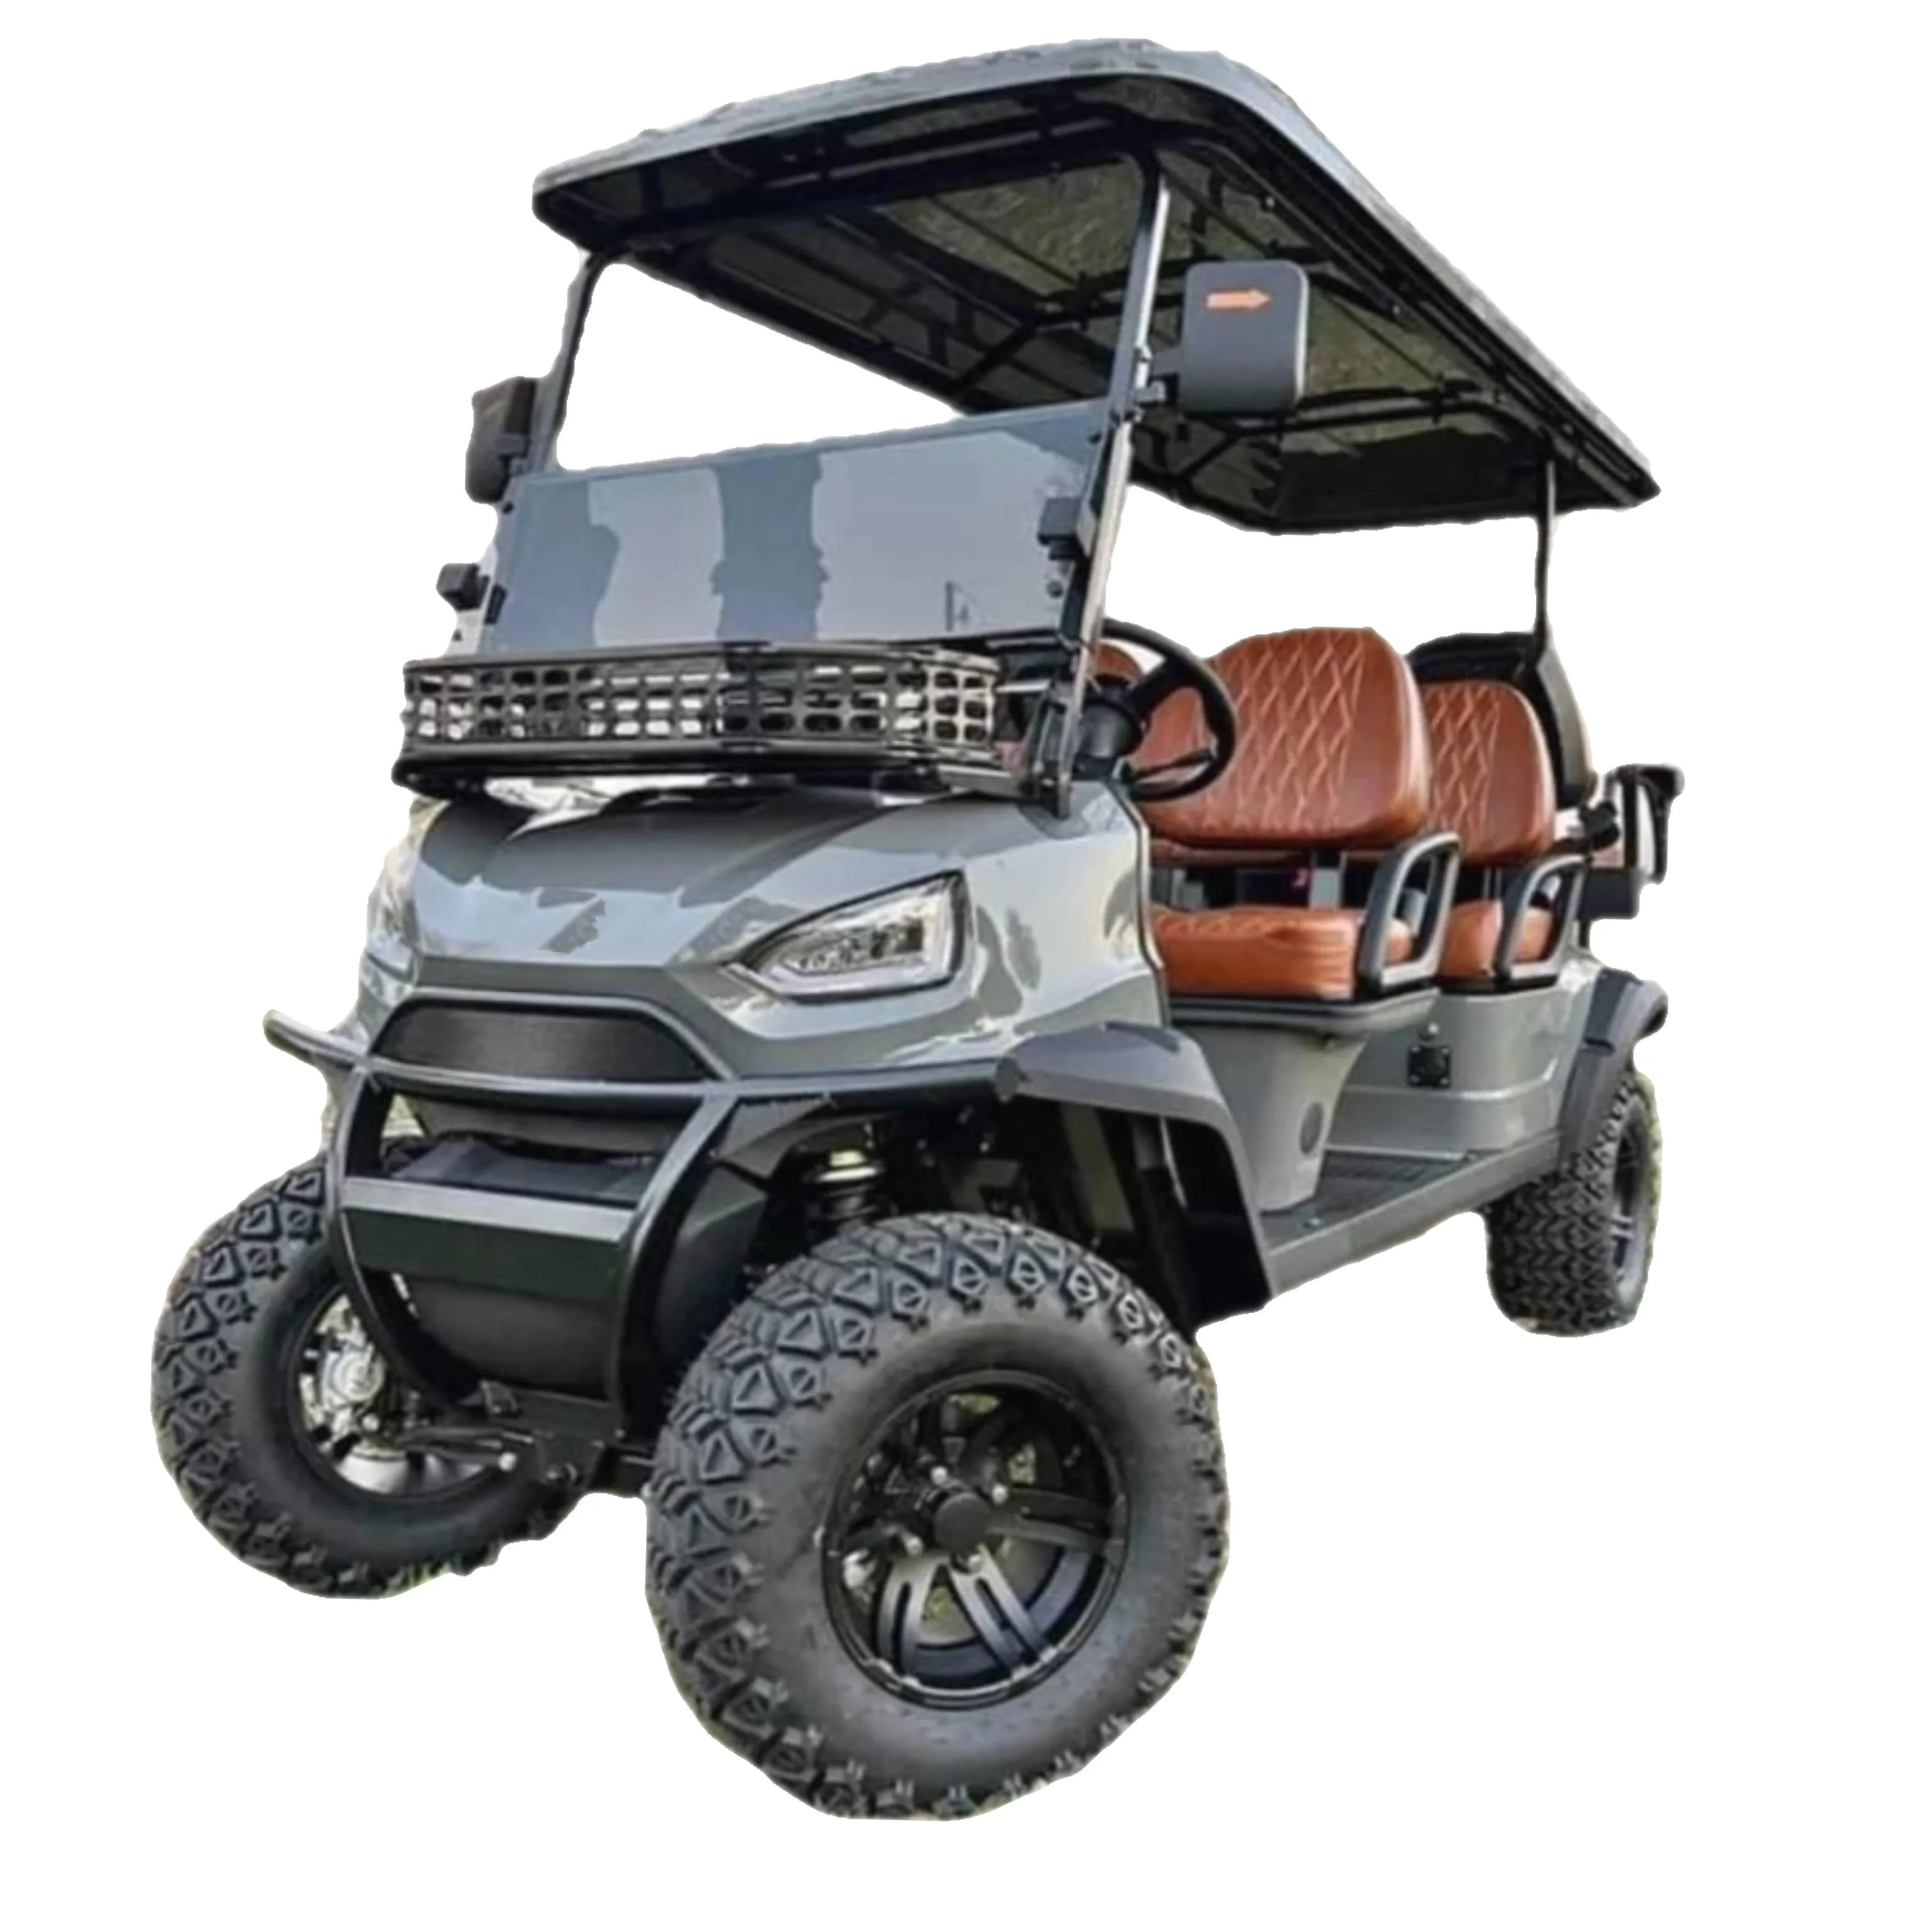 Valutato fuoristrada pneumatici carrello da Golf fuoristrada 6 passeggeri carrello da golf elettrico moda moderna Design nuovo di zecca